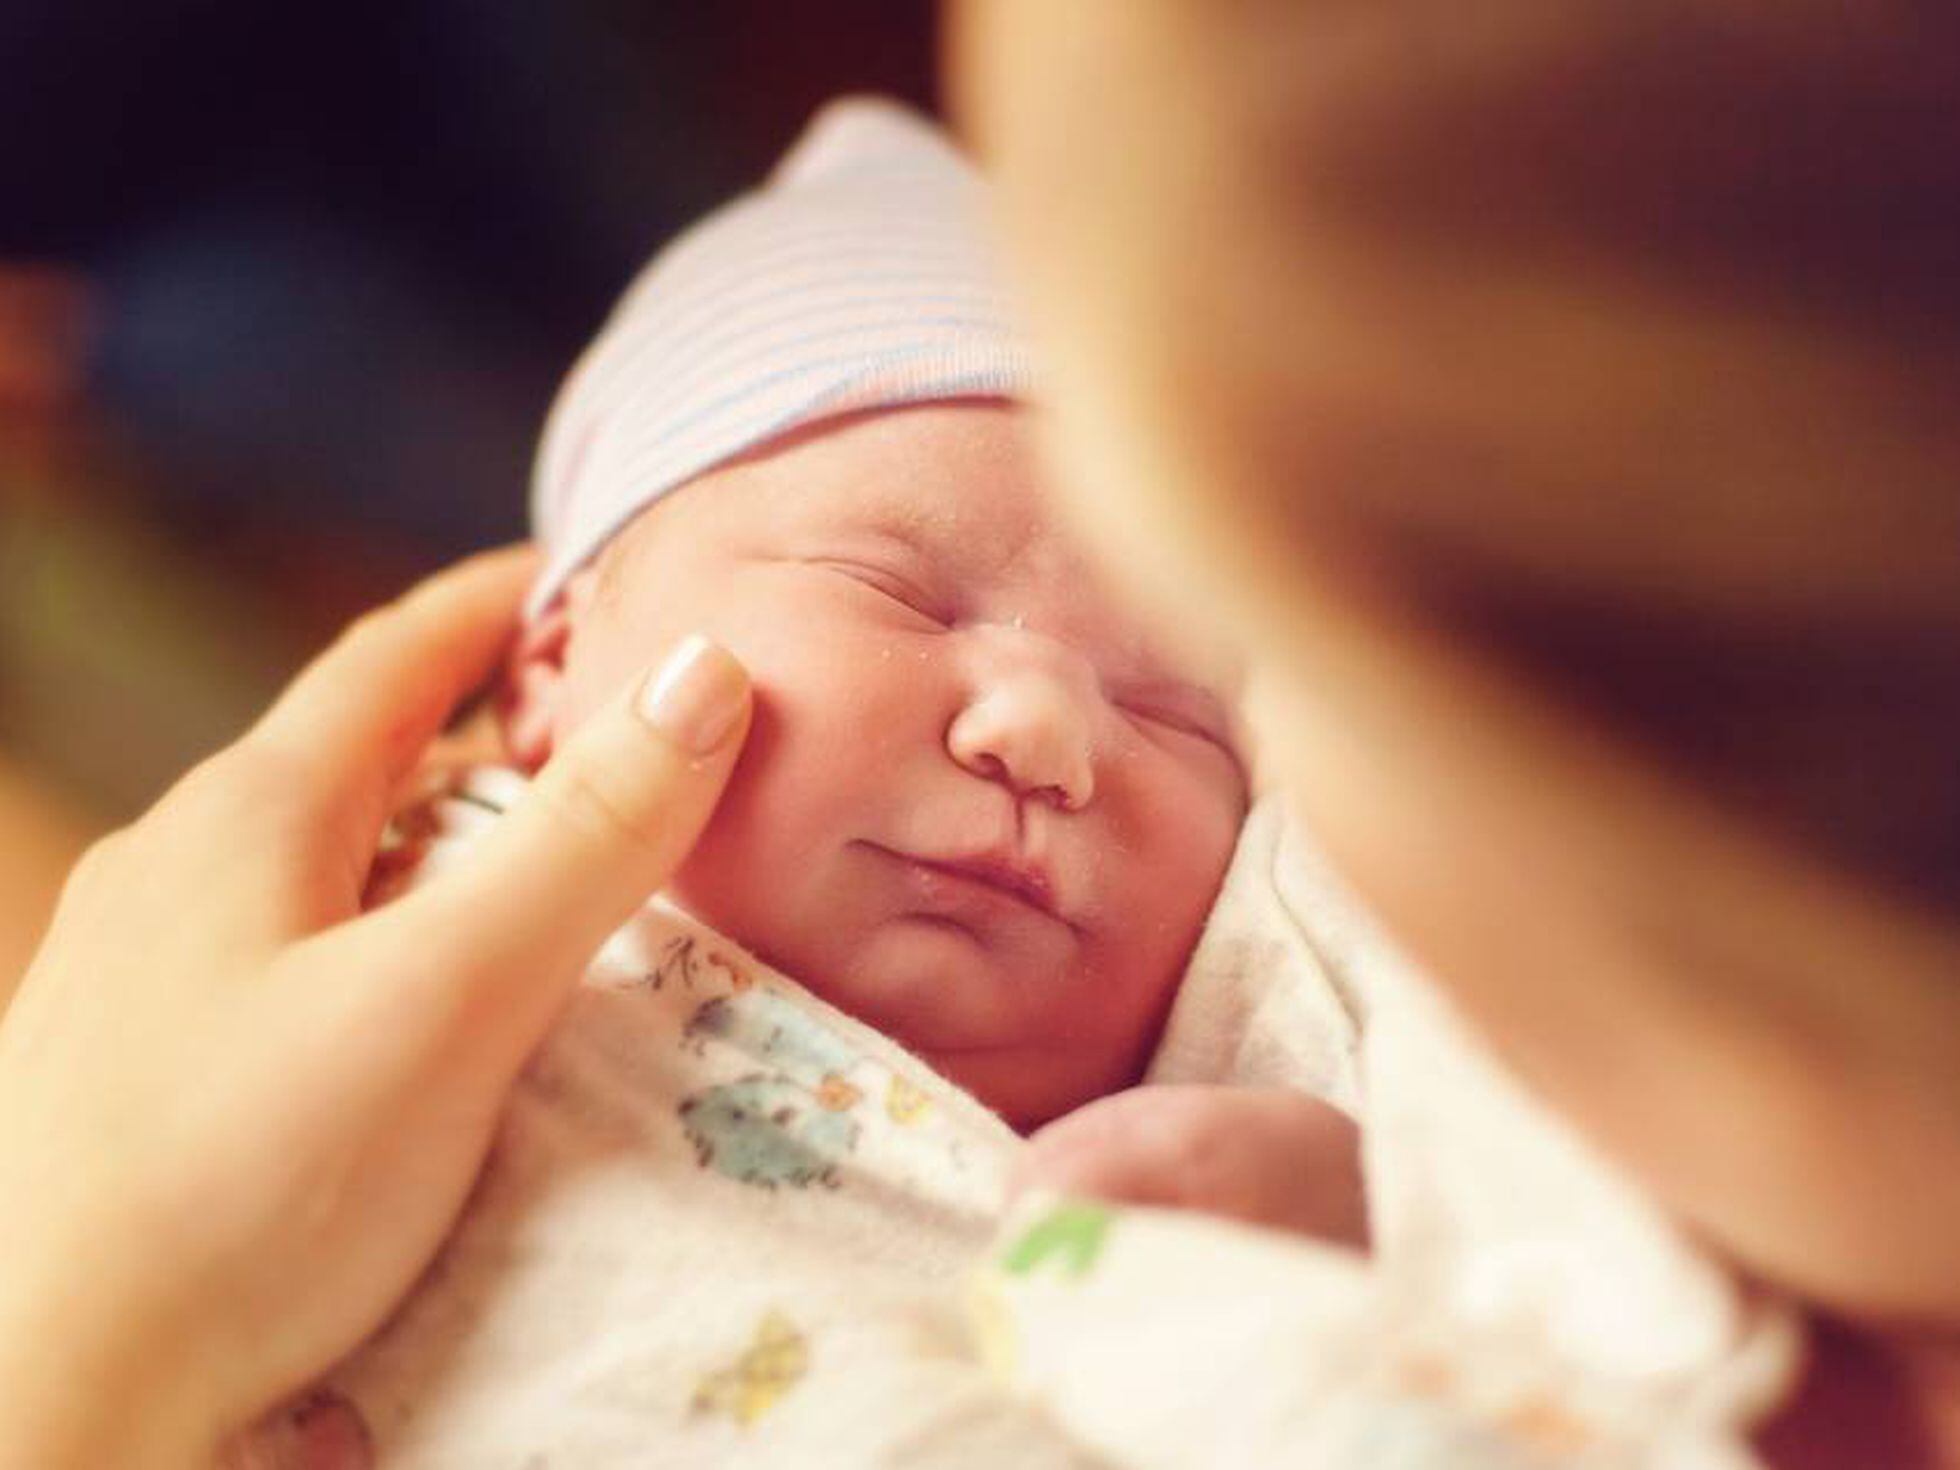 Si esperas un niño, es más probable que tu parto sea prematuro | Noticias de actualidad EL PAÍS